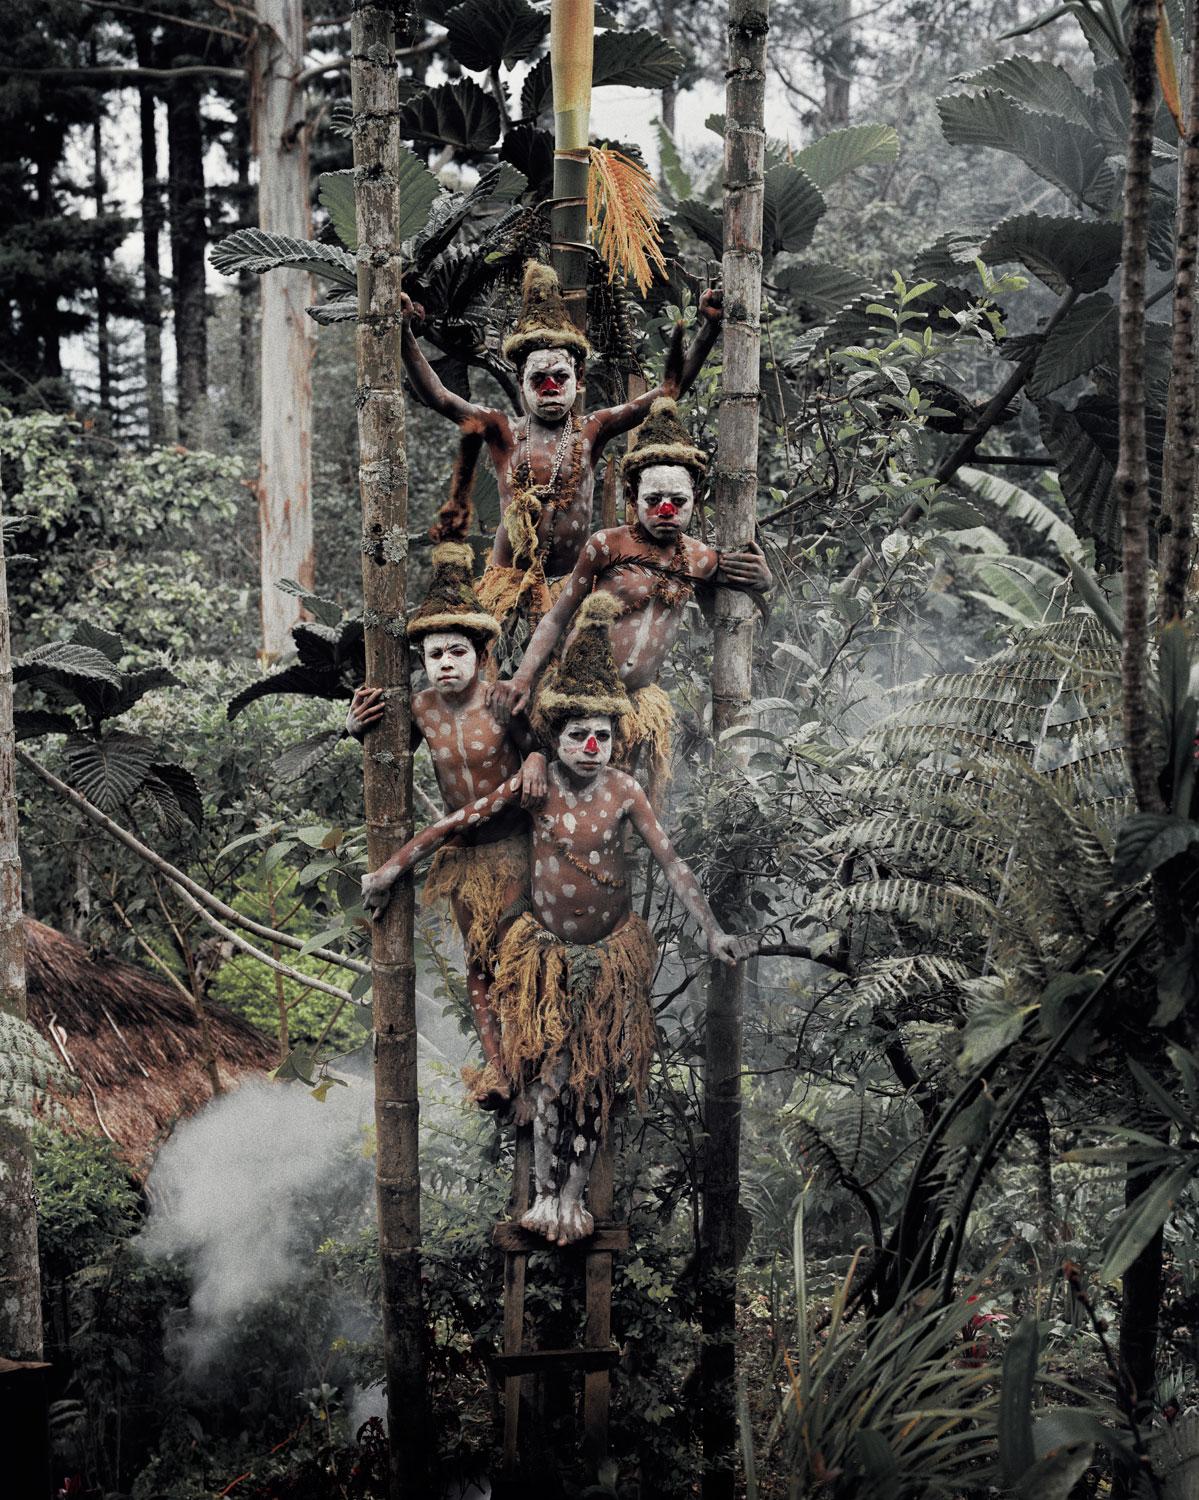 "XV 61 - Gogine Boys - Goroka, Östliches Hochland - Papua-Neuguinea, 2010

Papua war der Ausgangspunkt unserer zweimonatigen Reise durch Ozeanien. Als Region ist es viel einfacher zu bereisen als Neuguinea, da es zu Indonesien gehört und daher viel